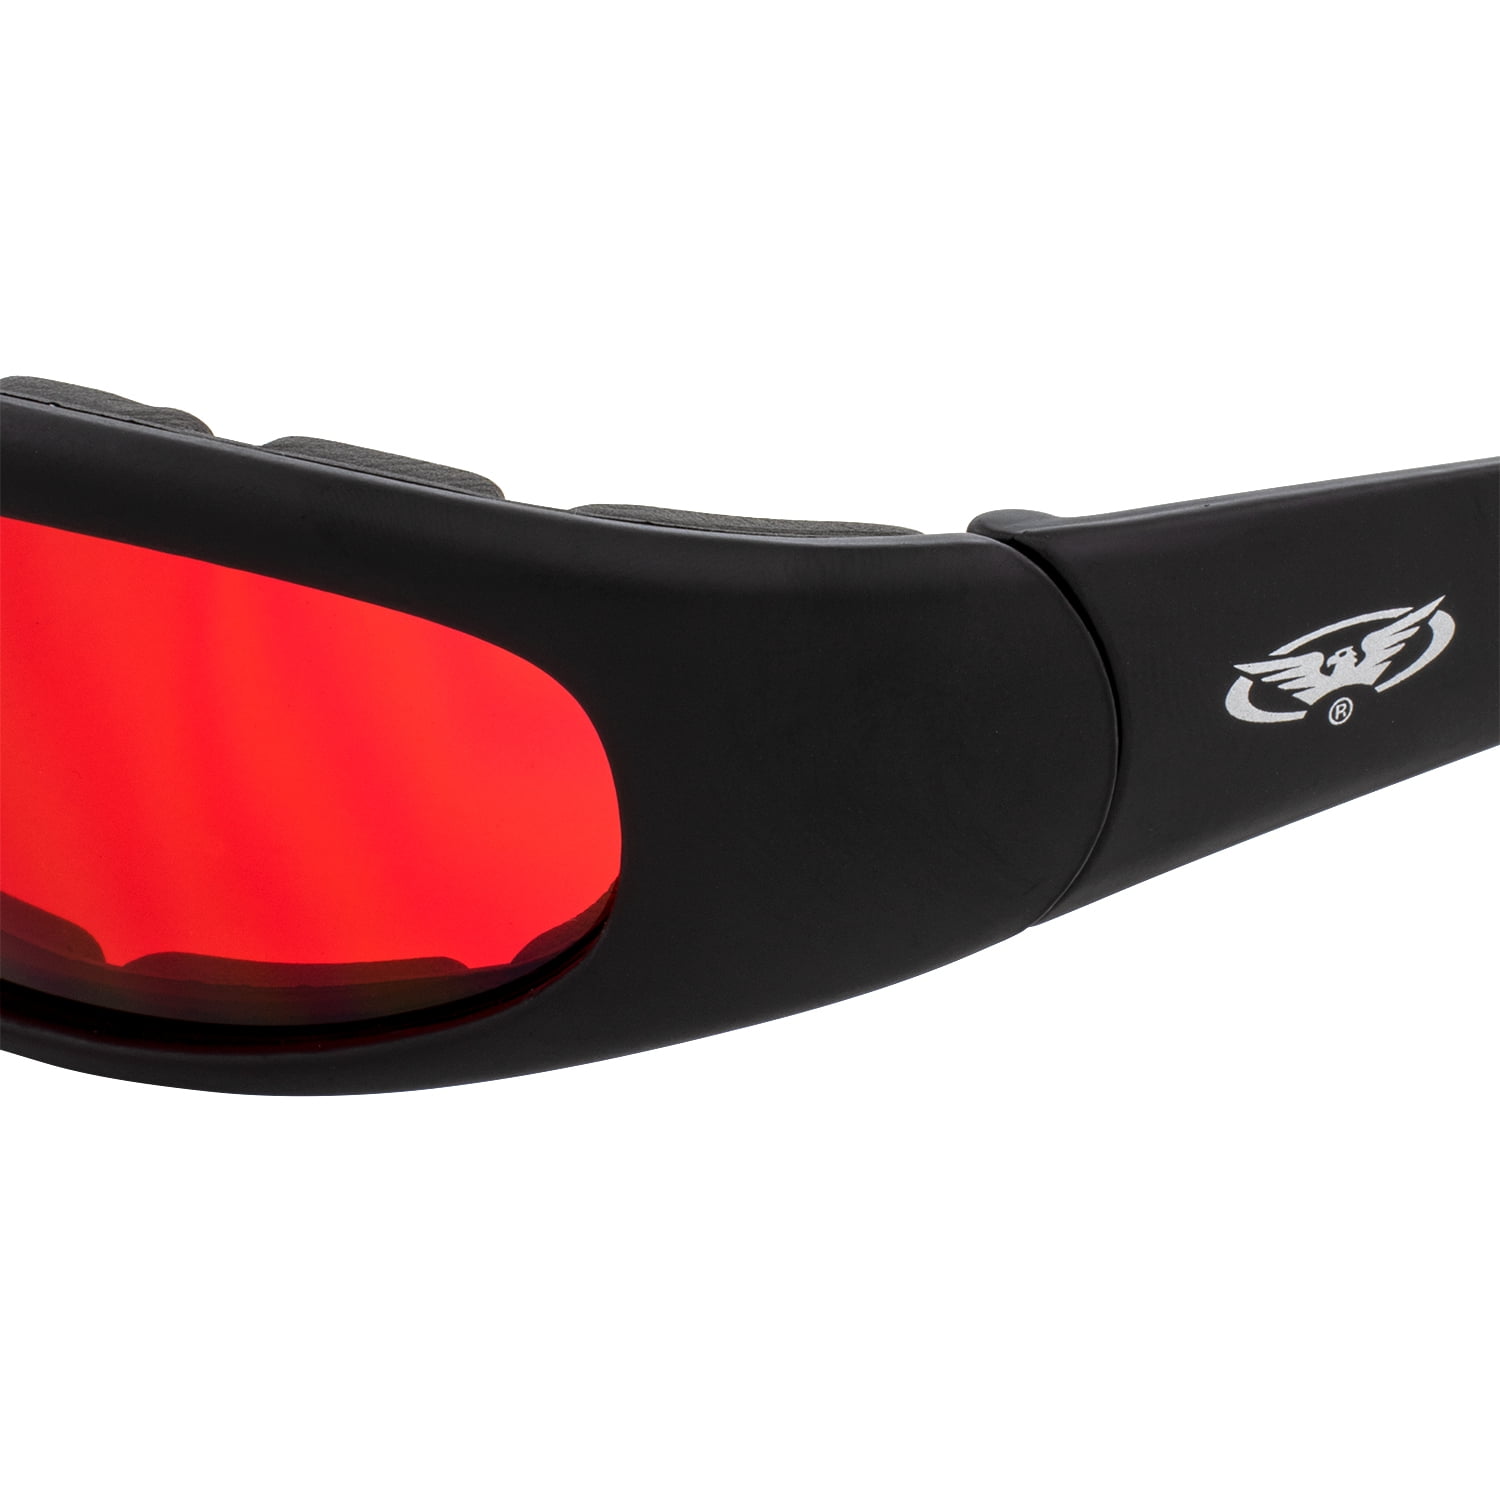 Global Vision Chicago Padded Riding Glasses (Black Frame/Red Lens) 